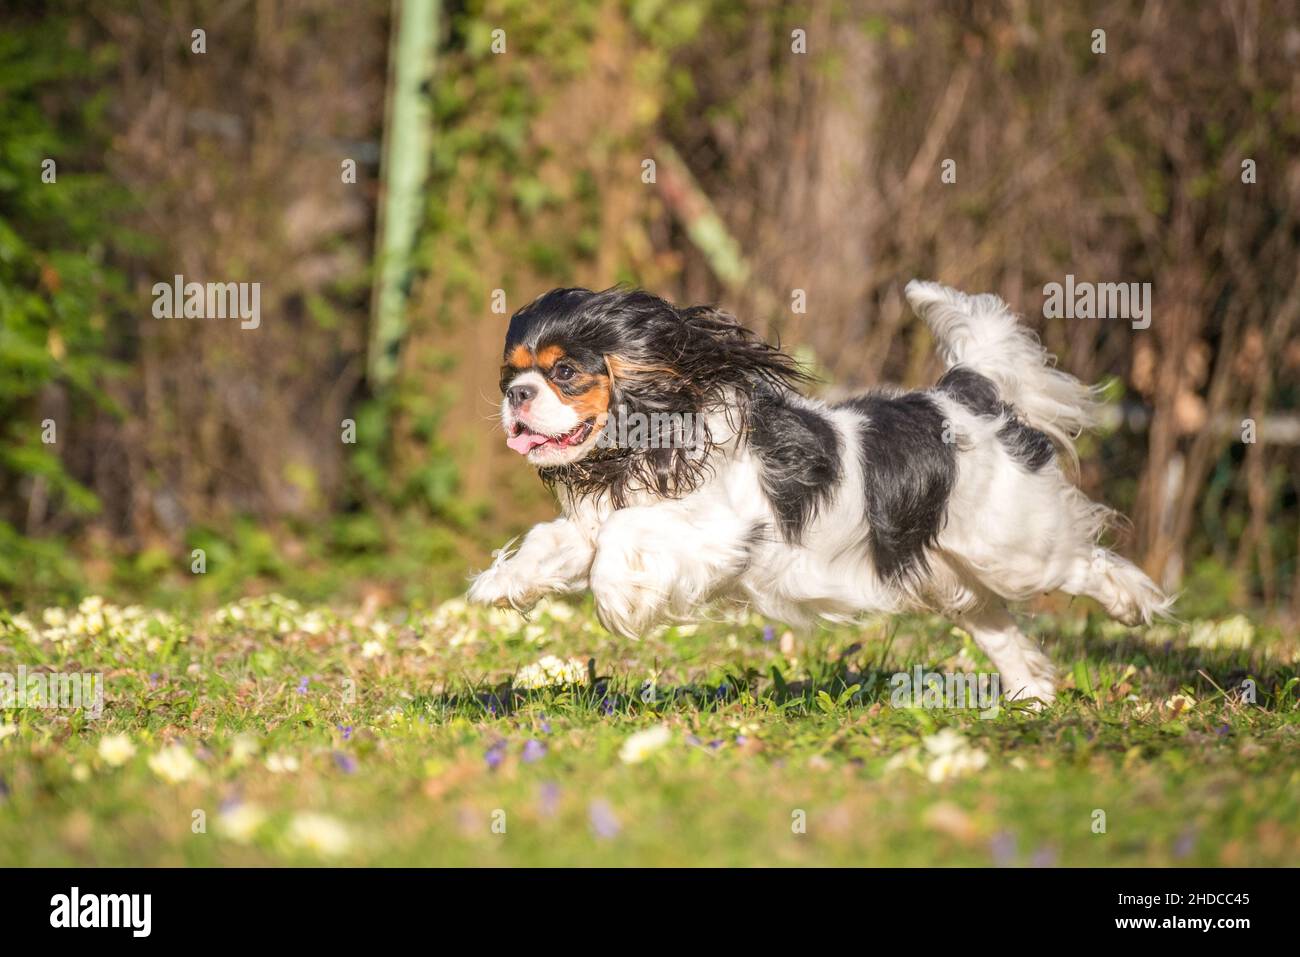 Cavalier King Charles Spaniel purebred juega en el jardín de la pradera verde. Perro pequeño de tres colores con orejas de floppy volando alrededor mientras corres. Foto de stock